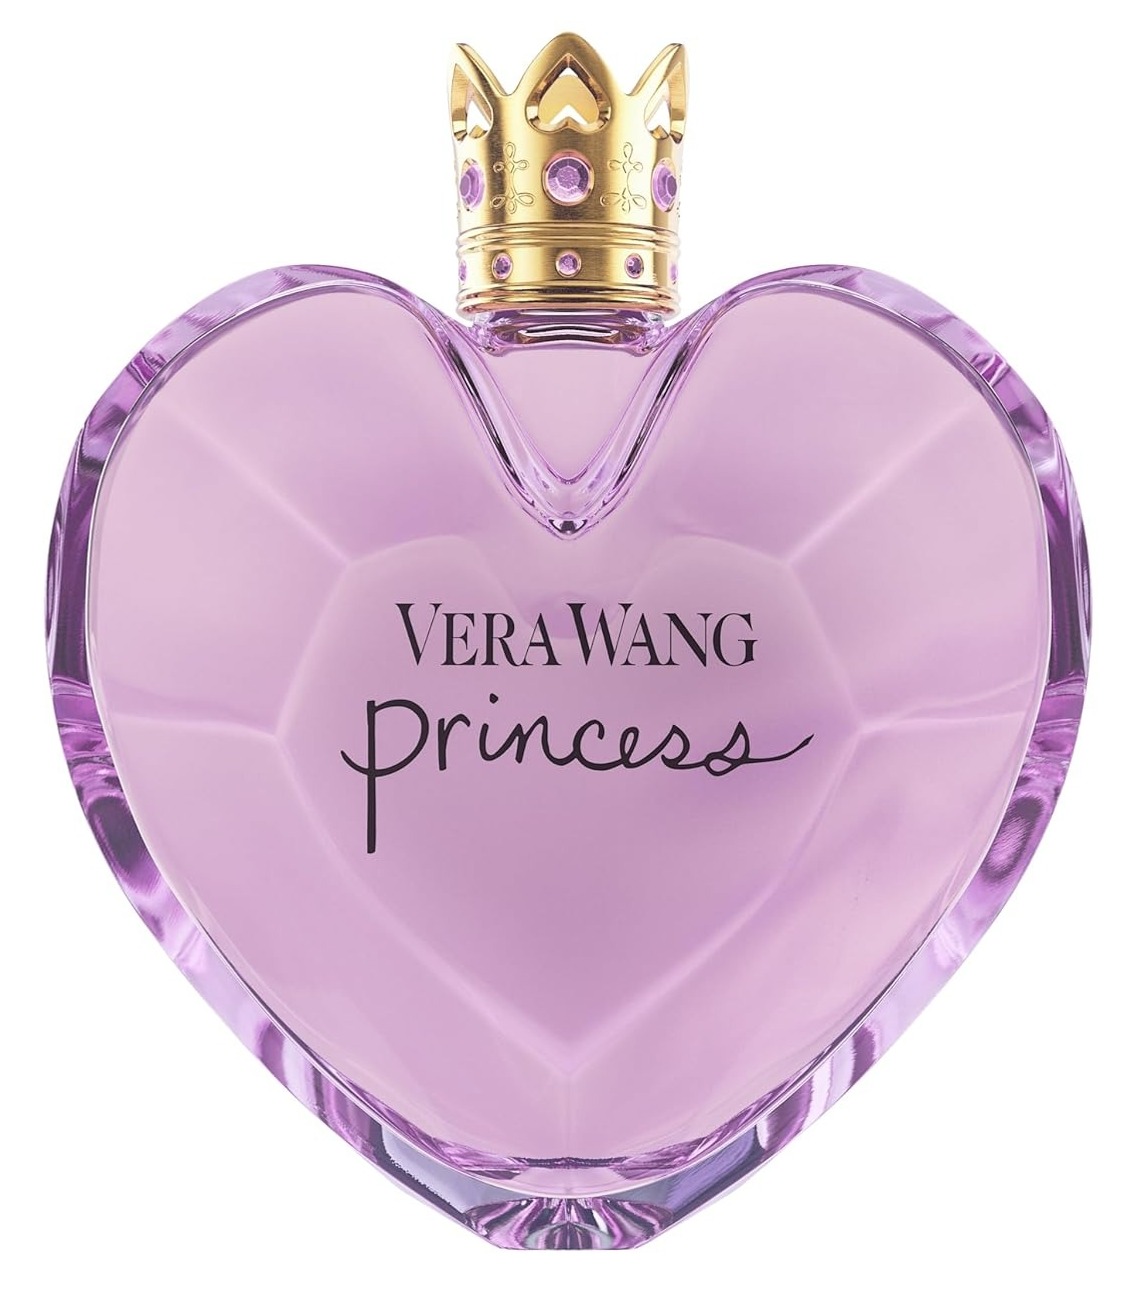 $22.33 w/ S&S: Vera Wang Princess Eau de Toilette for Women, Fruity Floral Scent, 1.7 Fl Oz